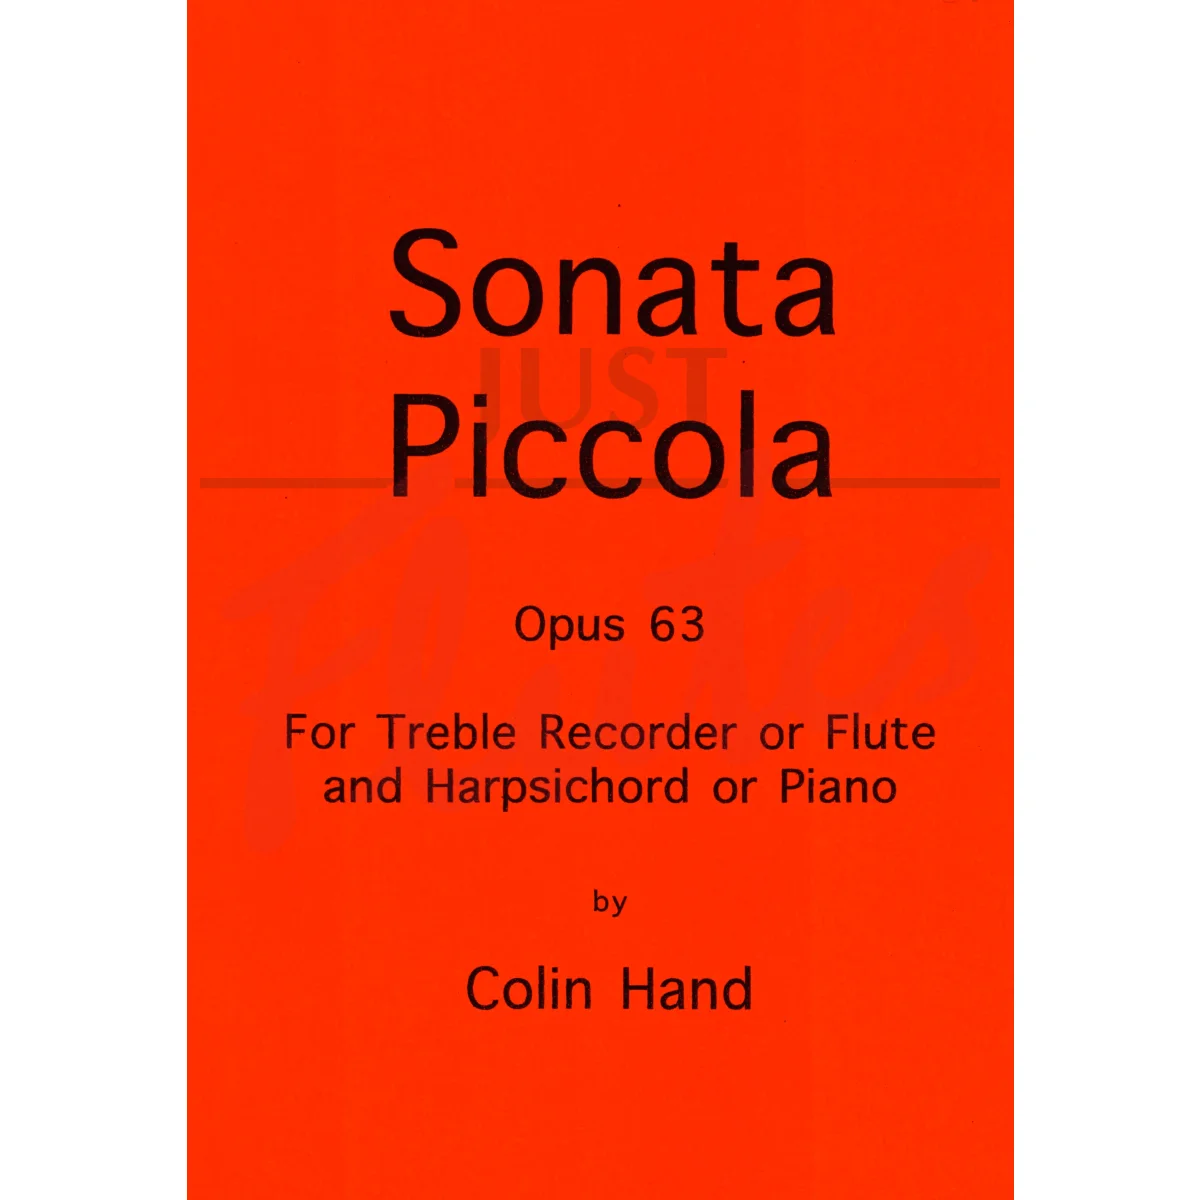 Sonata Piccola for Flute/Treble Recorder and Piano/Harpsichord